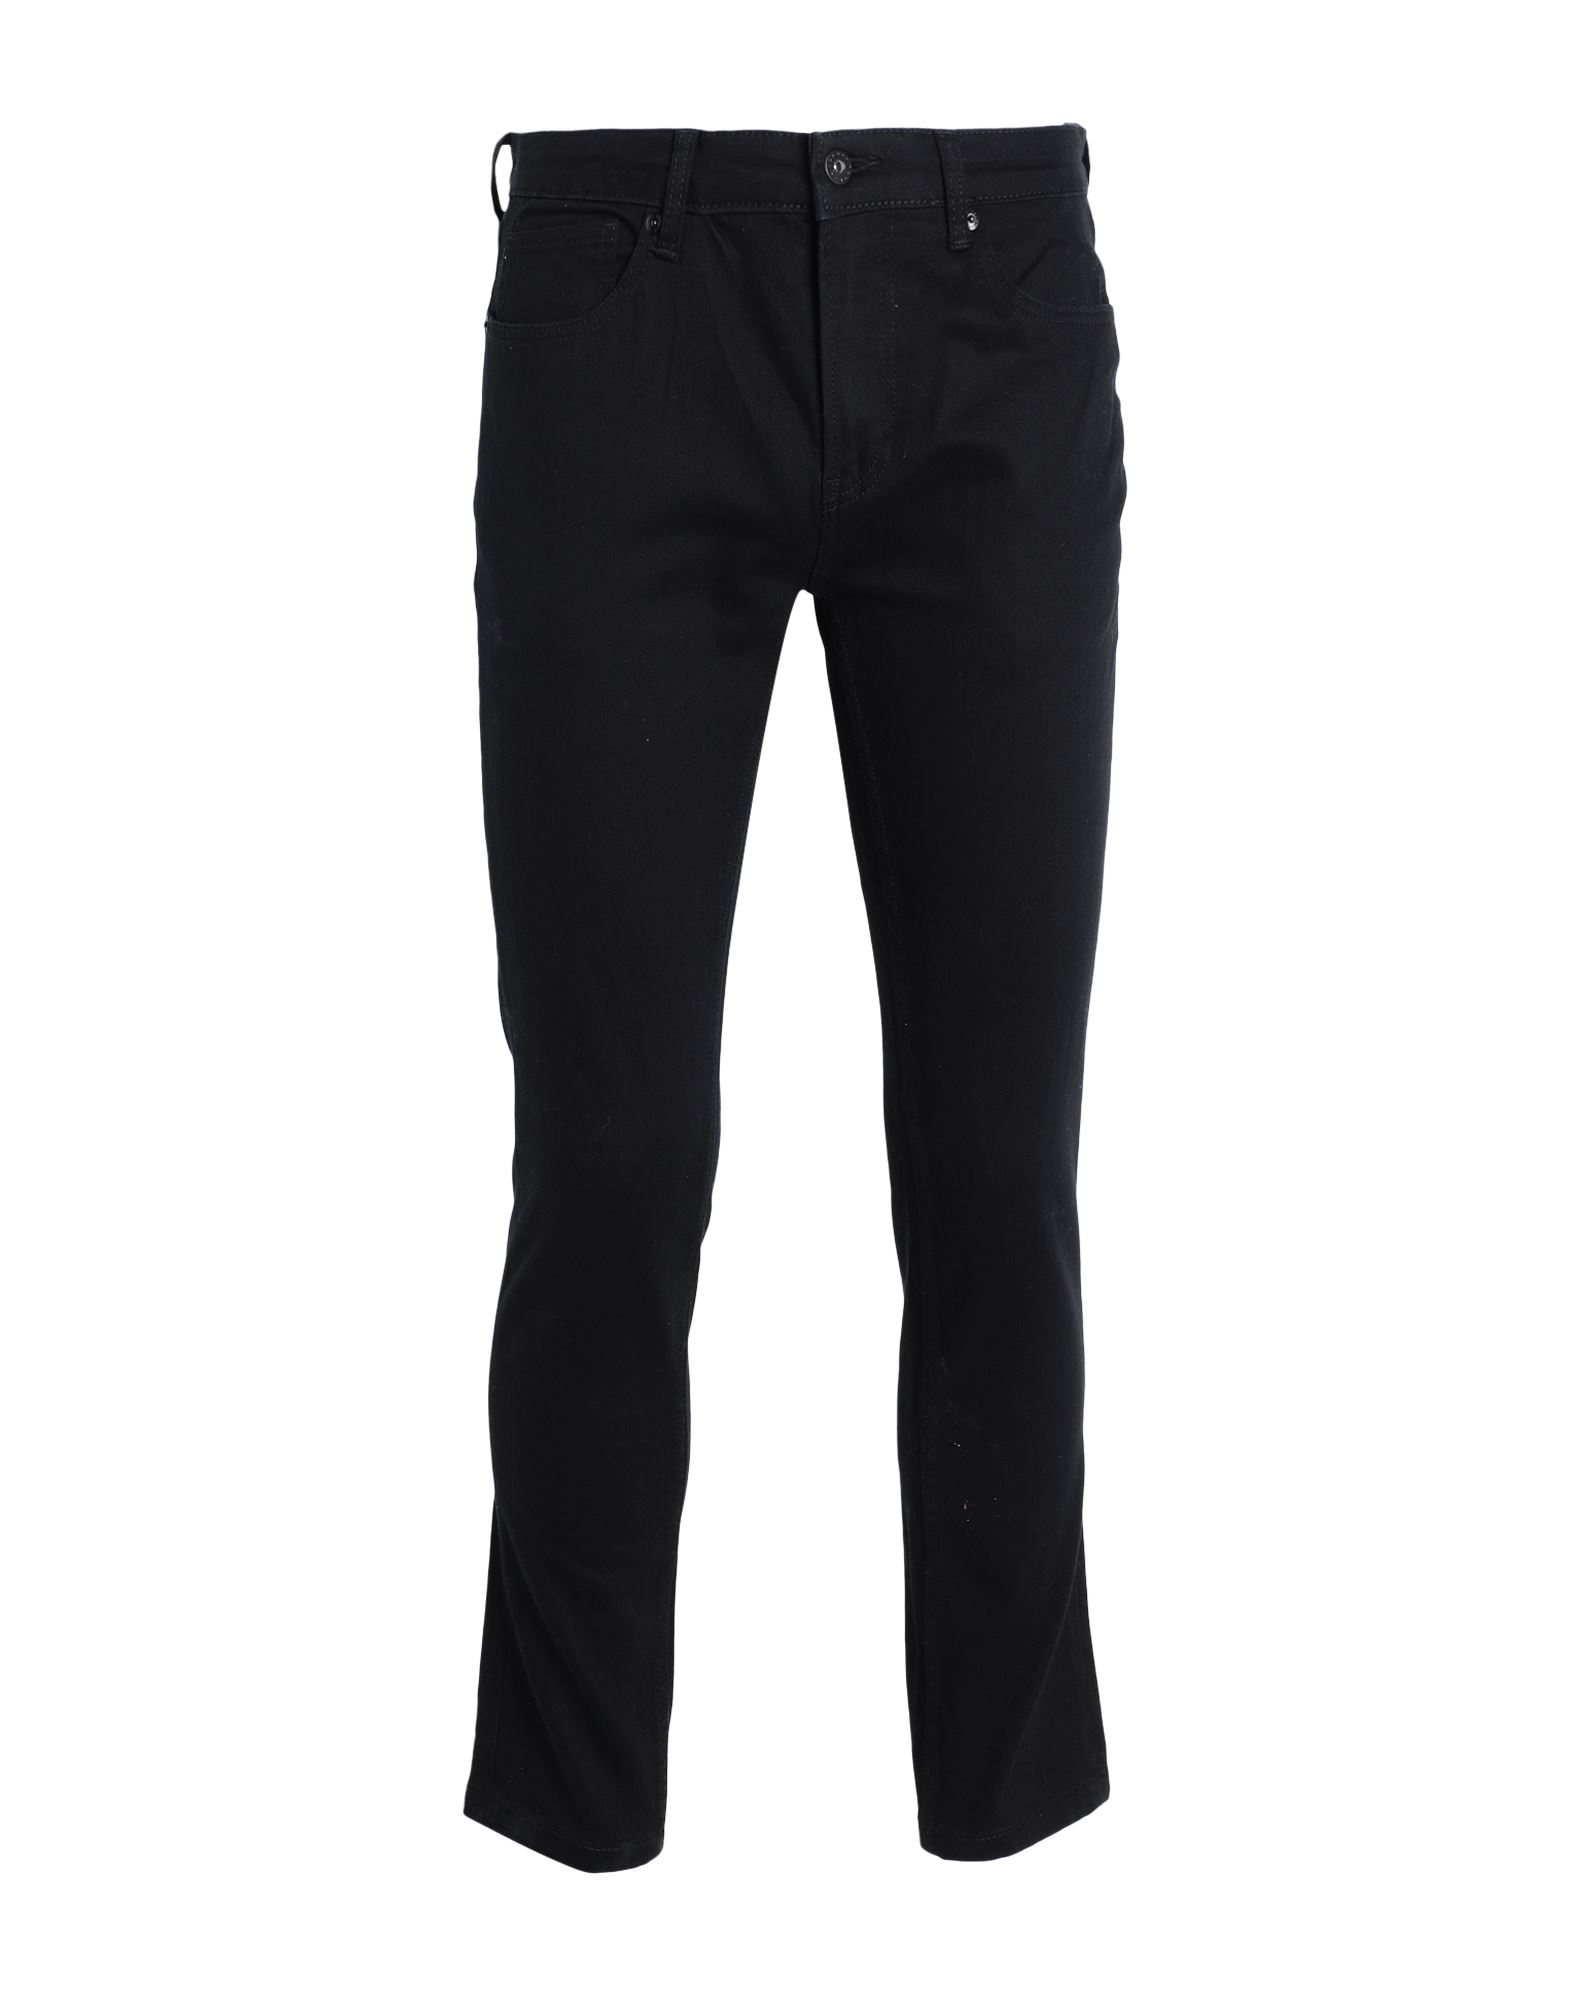 Topman Man Jeans Black Size 30w-32l Cotton, Elastane